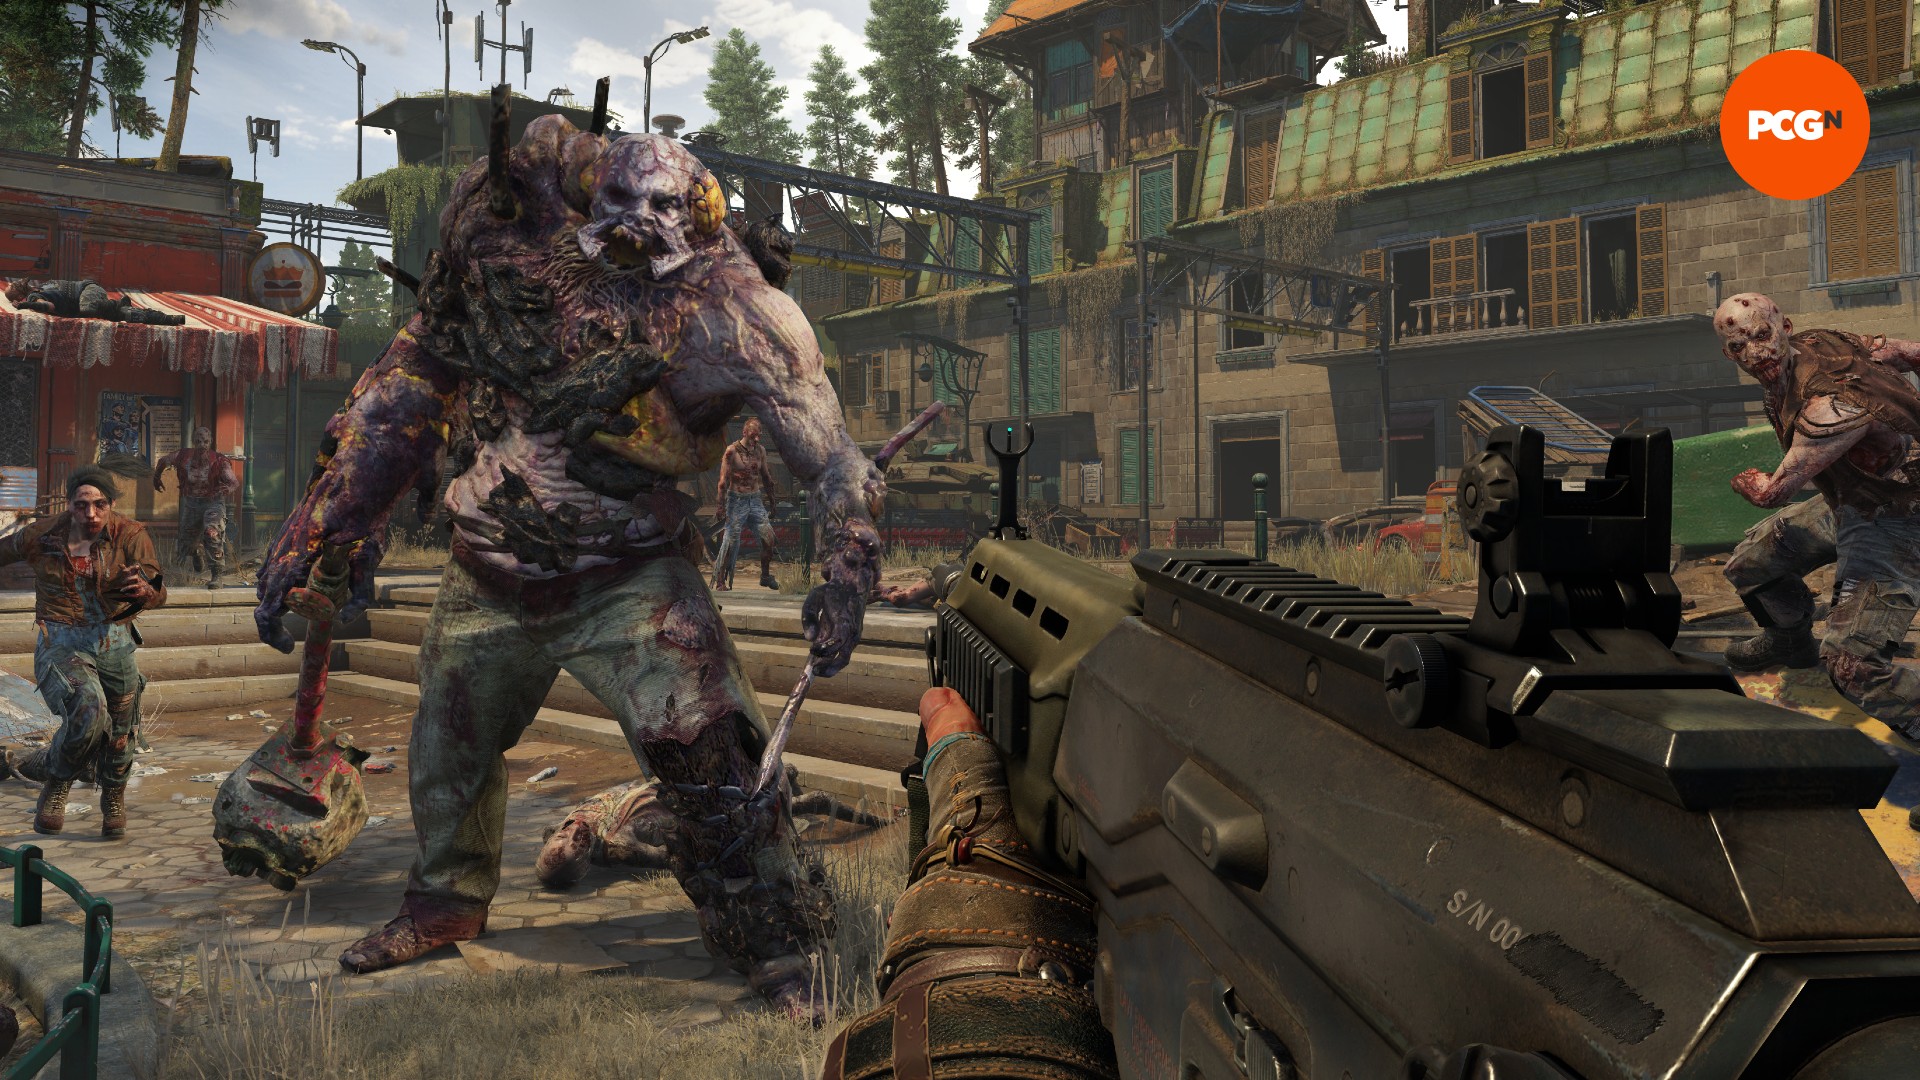 Una enorme criatura zombi camina hacia un hombre que sostiene un arma, flanqueada por zombis más pequeños.